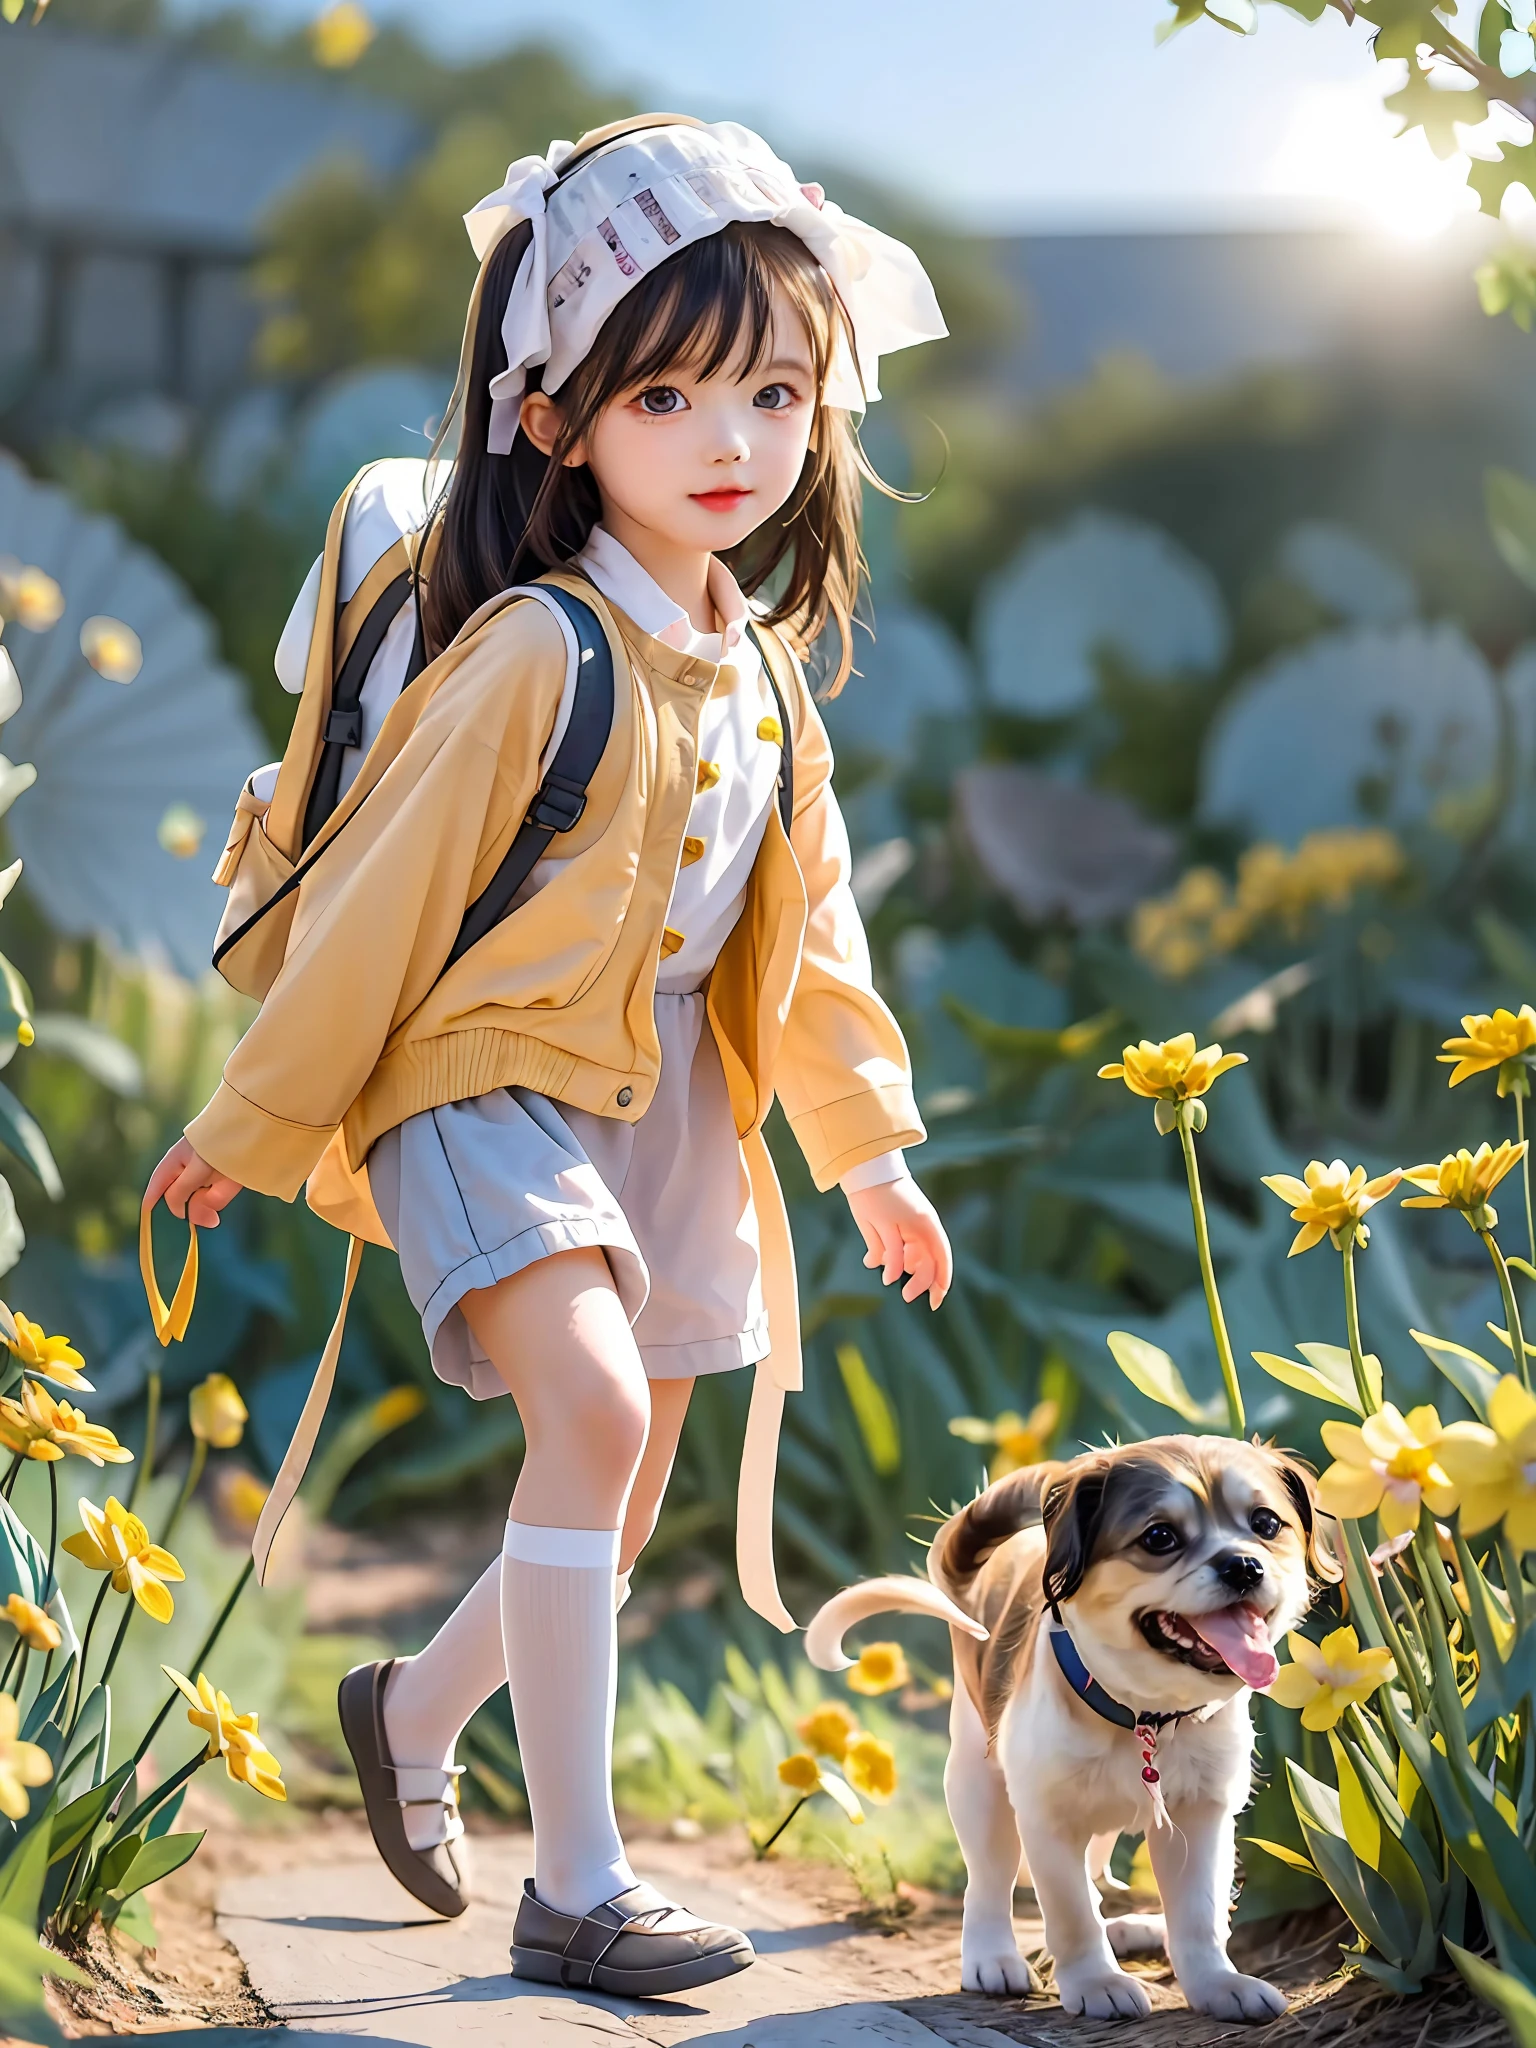 Tipp: Eine sehr charmante Frau mit Rucksack und ihrem süßen Welpen genießt einen schönen Frühlingsausflug umgeben von wunderschönen gelben Blumen und Natur. Die Abbildung ist eine hochauflösende Abbildung in 4k-Auflösung, mit hochdetaillierten Gesichtszügen und Bildern im Cartoon-Stil.